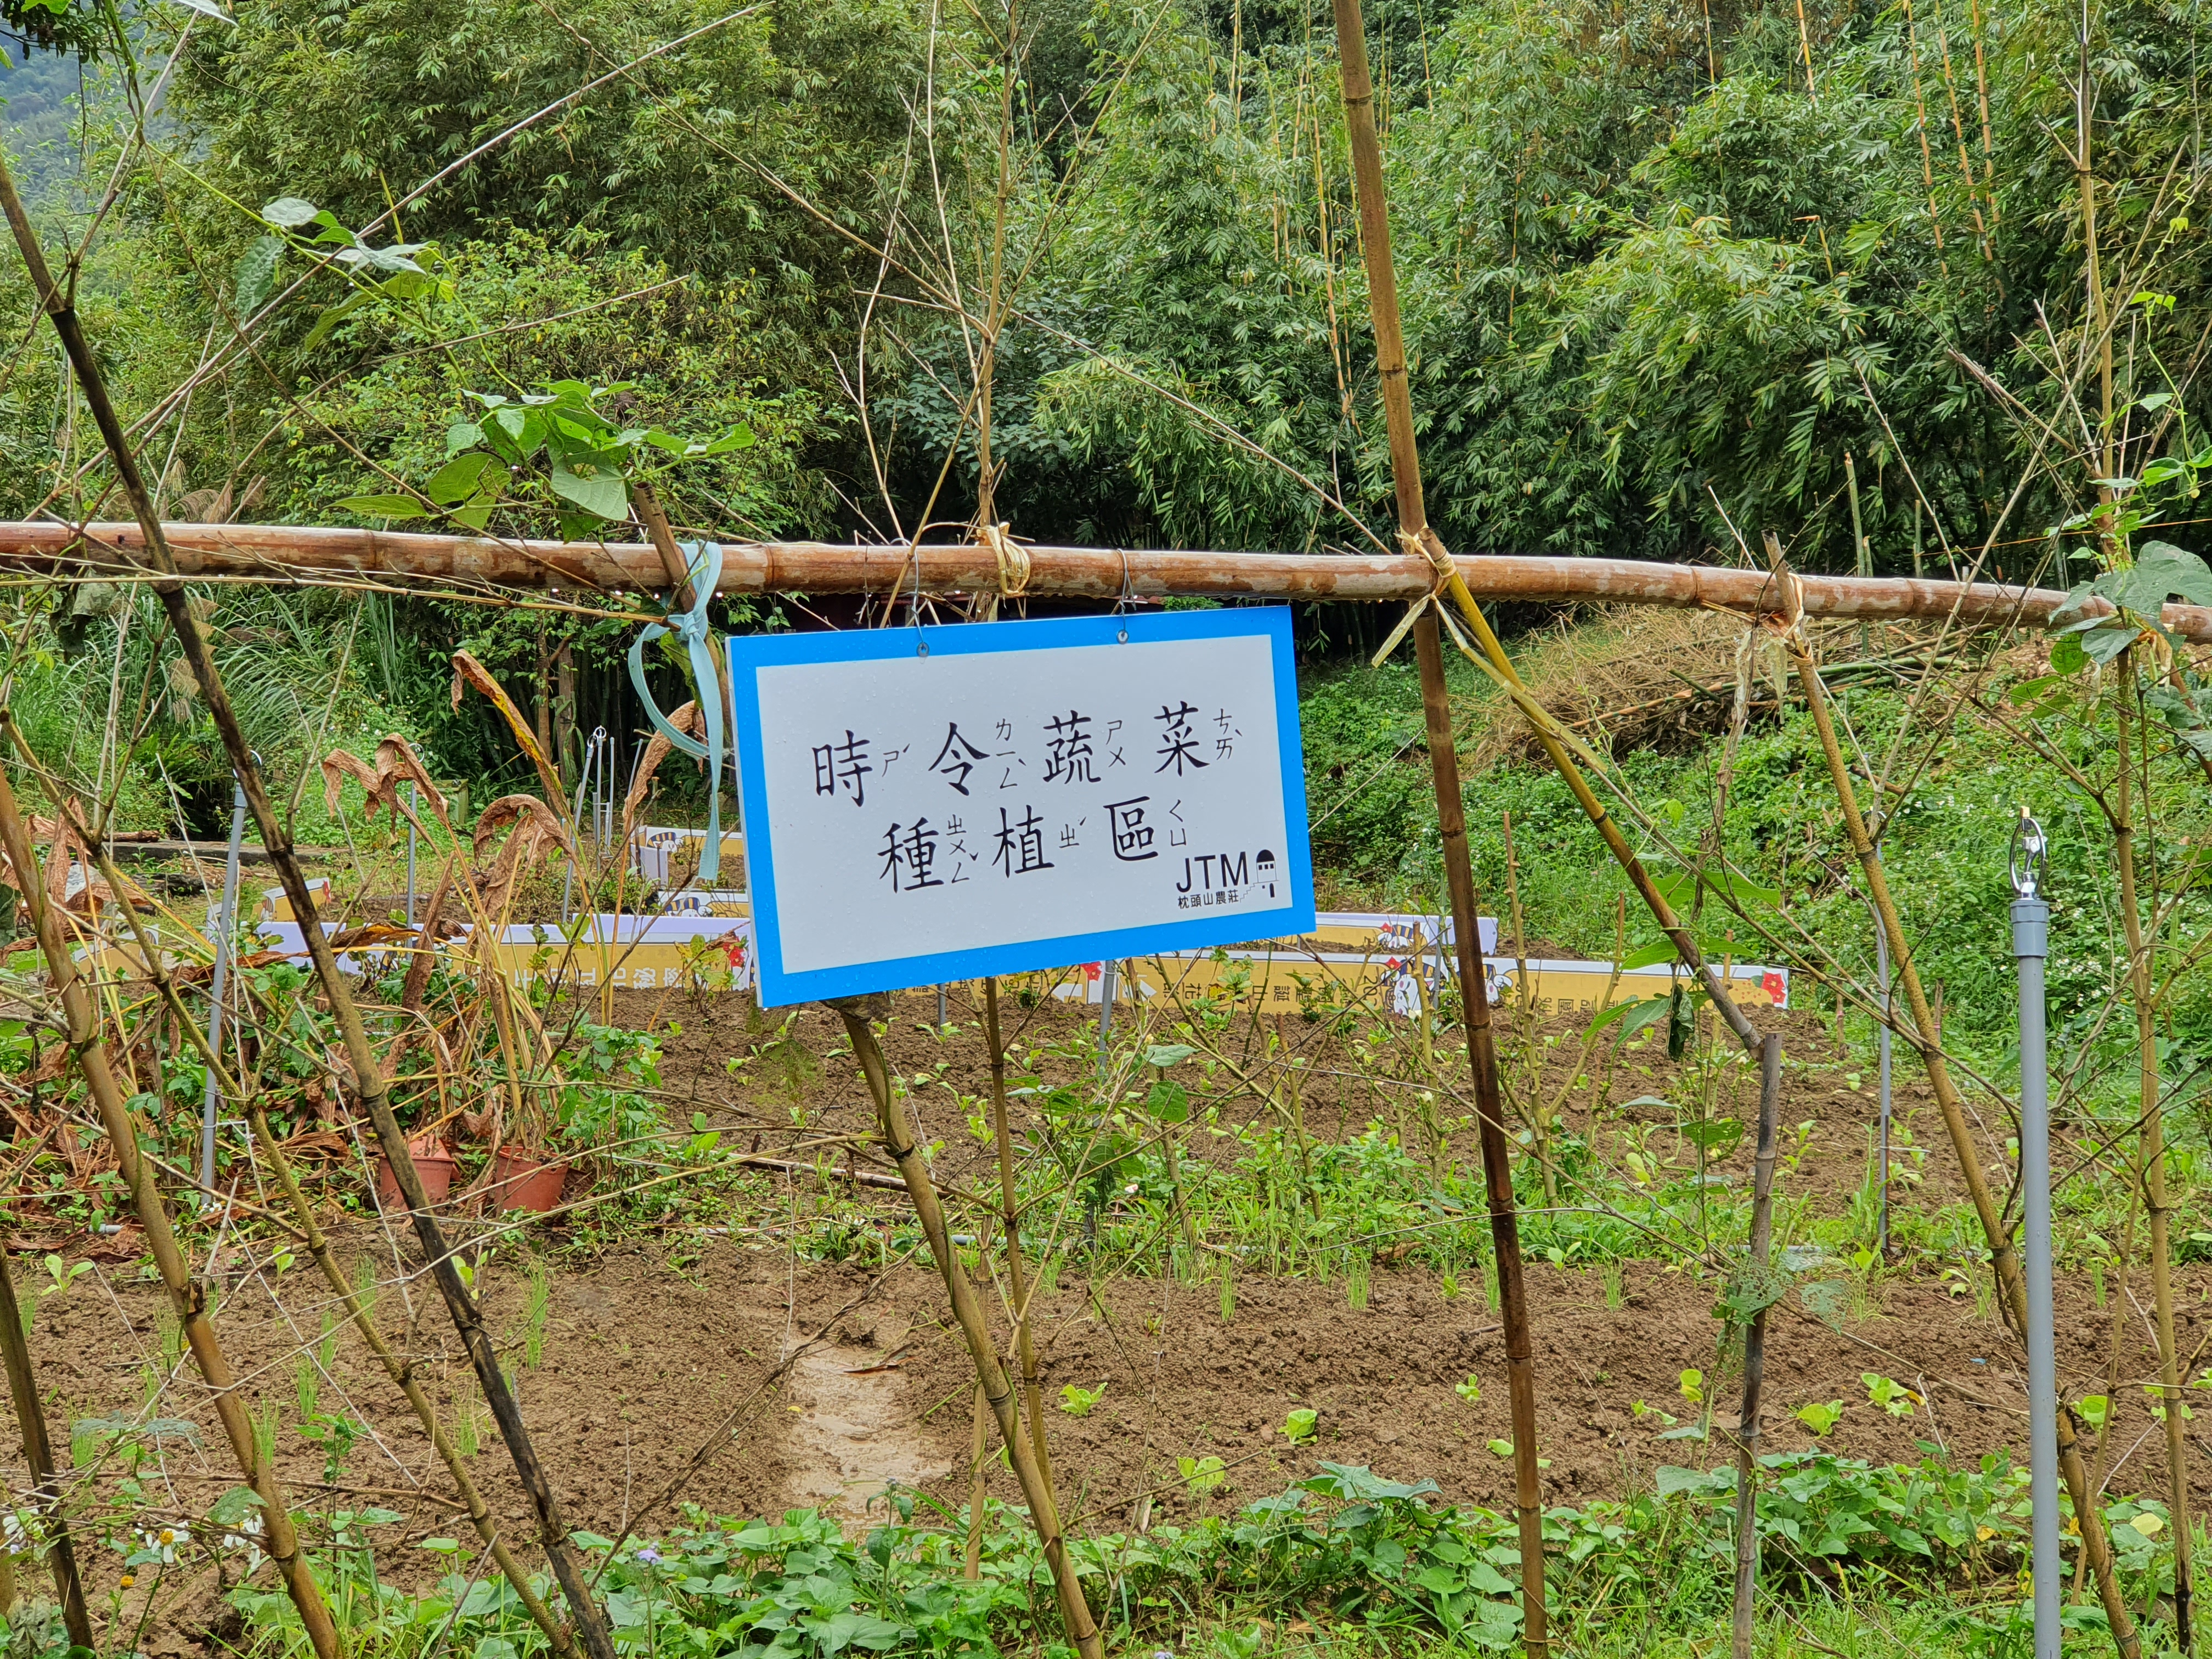 提供遊客體驗的蔬菜田園。